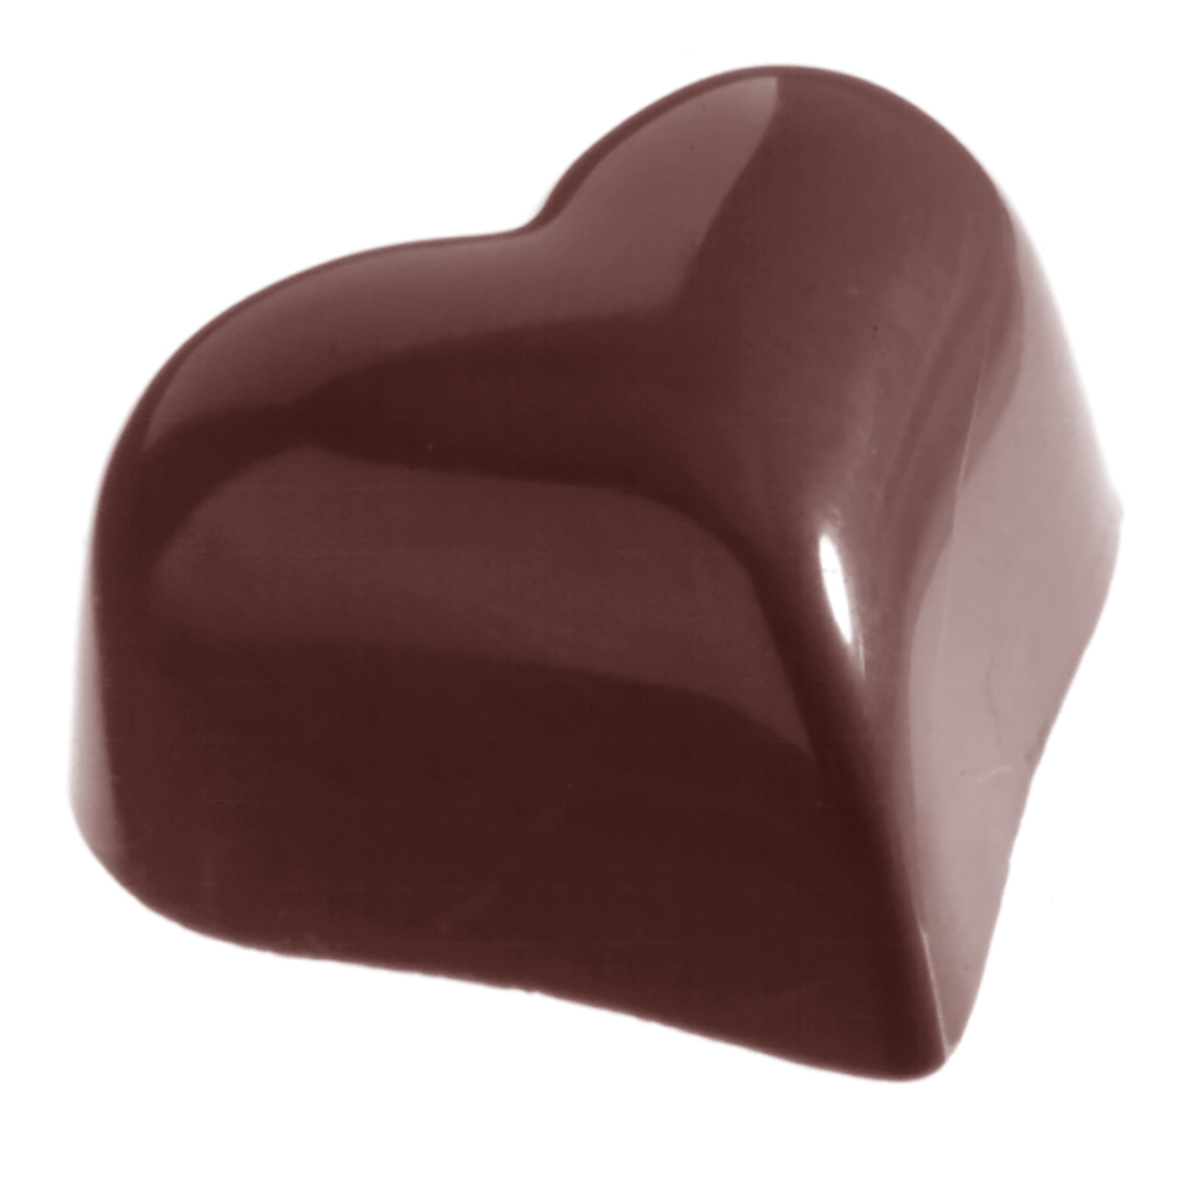 Professionel chokoladeform i polycarbonat - Small puffy heart 14 g CW1218